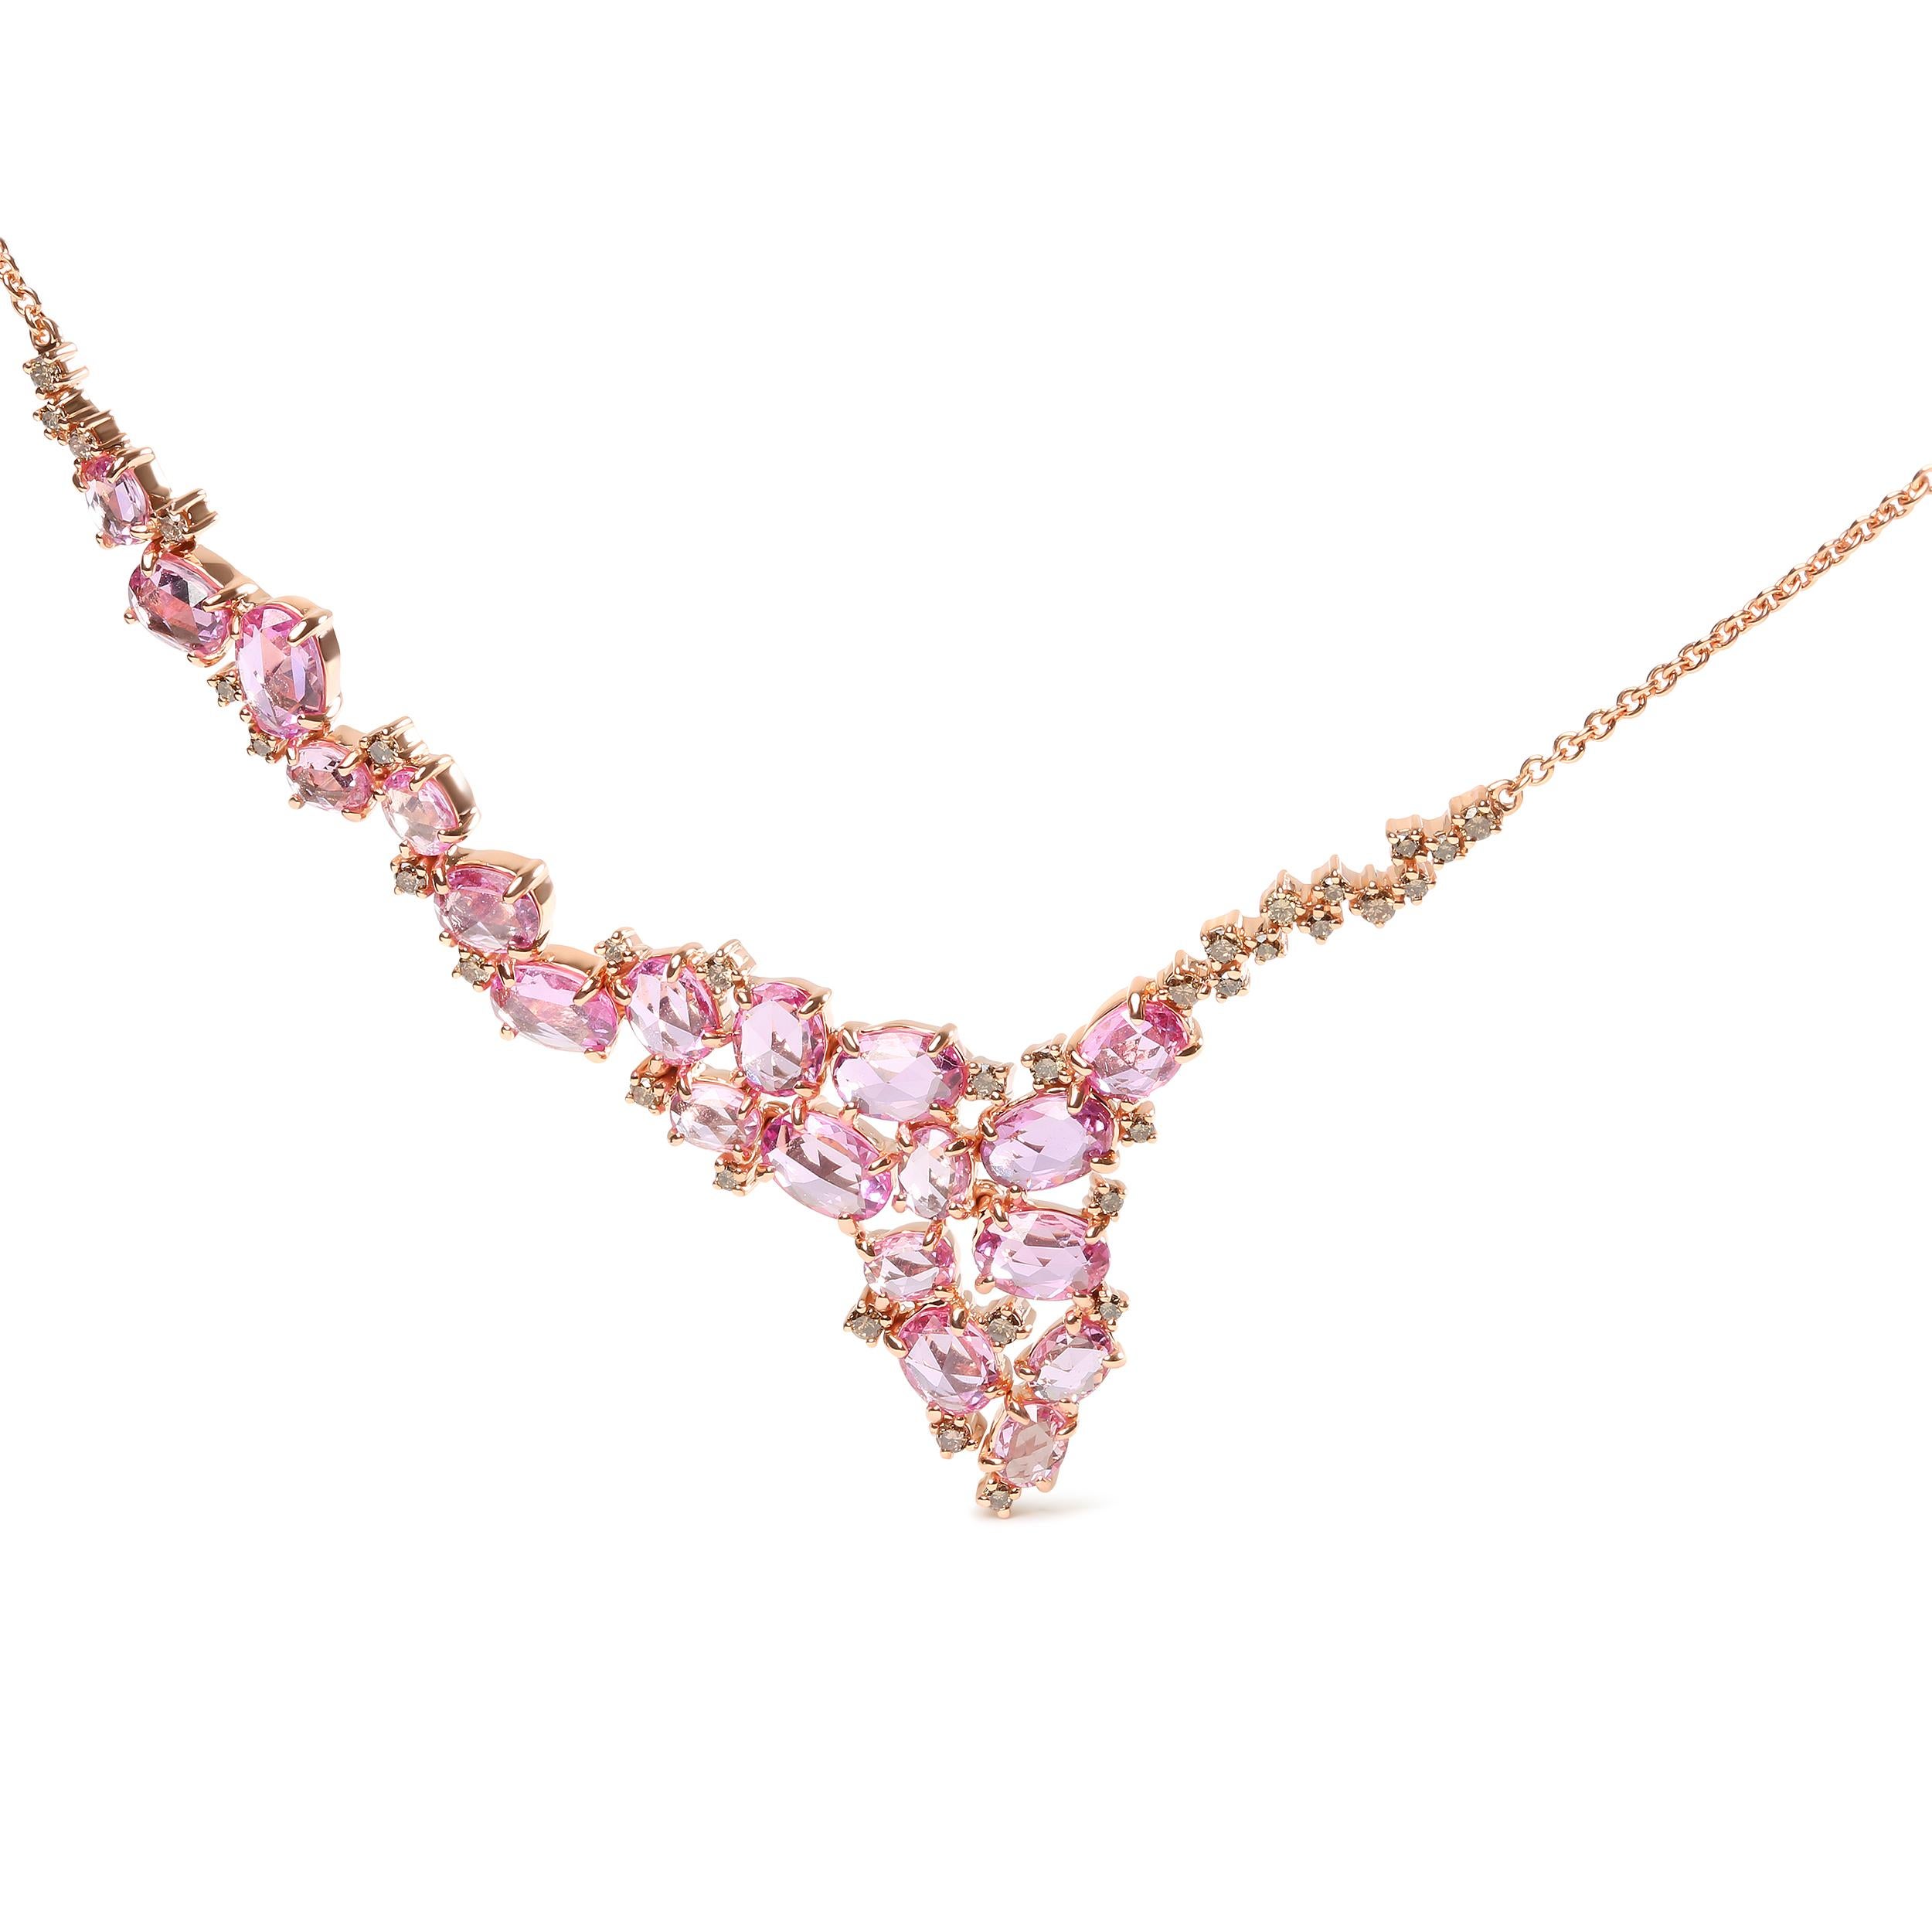 Dieses kaskadenförmige Collier aus poliertem 18-karätigem Roségold mit natürlichen Edelsteinen und Diamanten setzt einen besonderen Akzent auf das Funkeln. Eine einzigartige Anordnung von wärmebehandelten rosa Saphiren in Ovalen von 8x5 mm, 5x5 mm